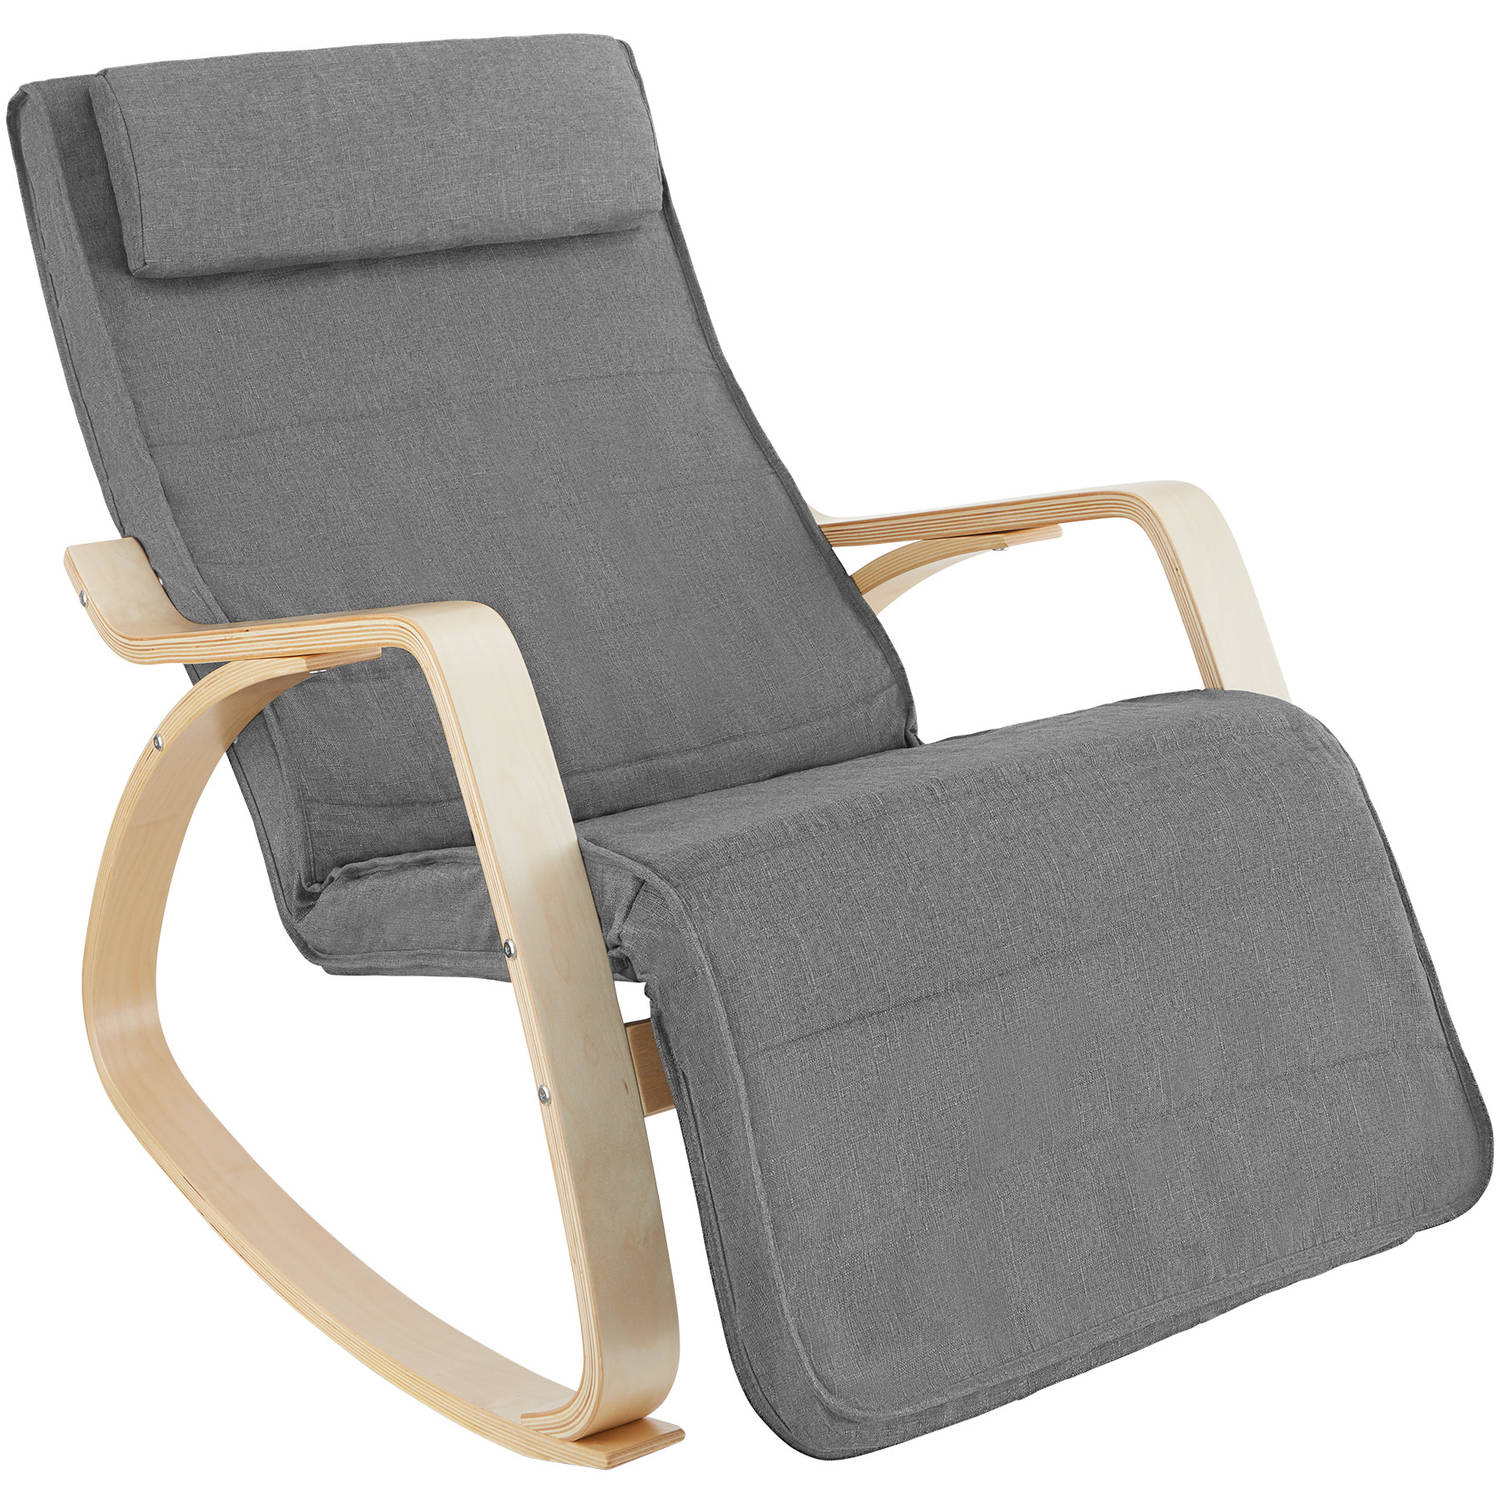 tectake -  Schommelstoel Onda fauteuil - verstelbare voetensteun - lichtgrijs - 403529